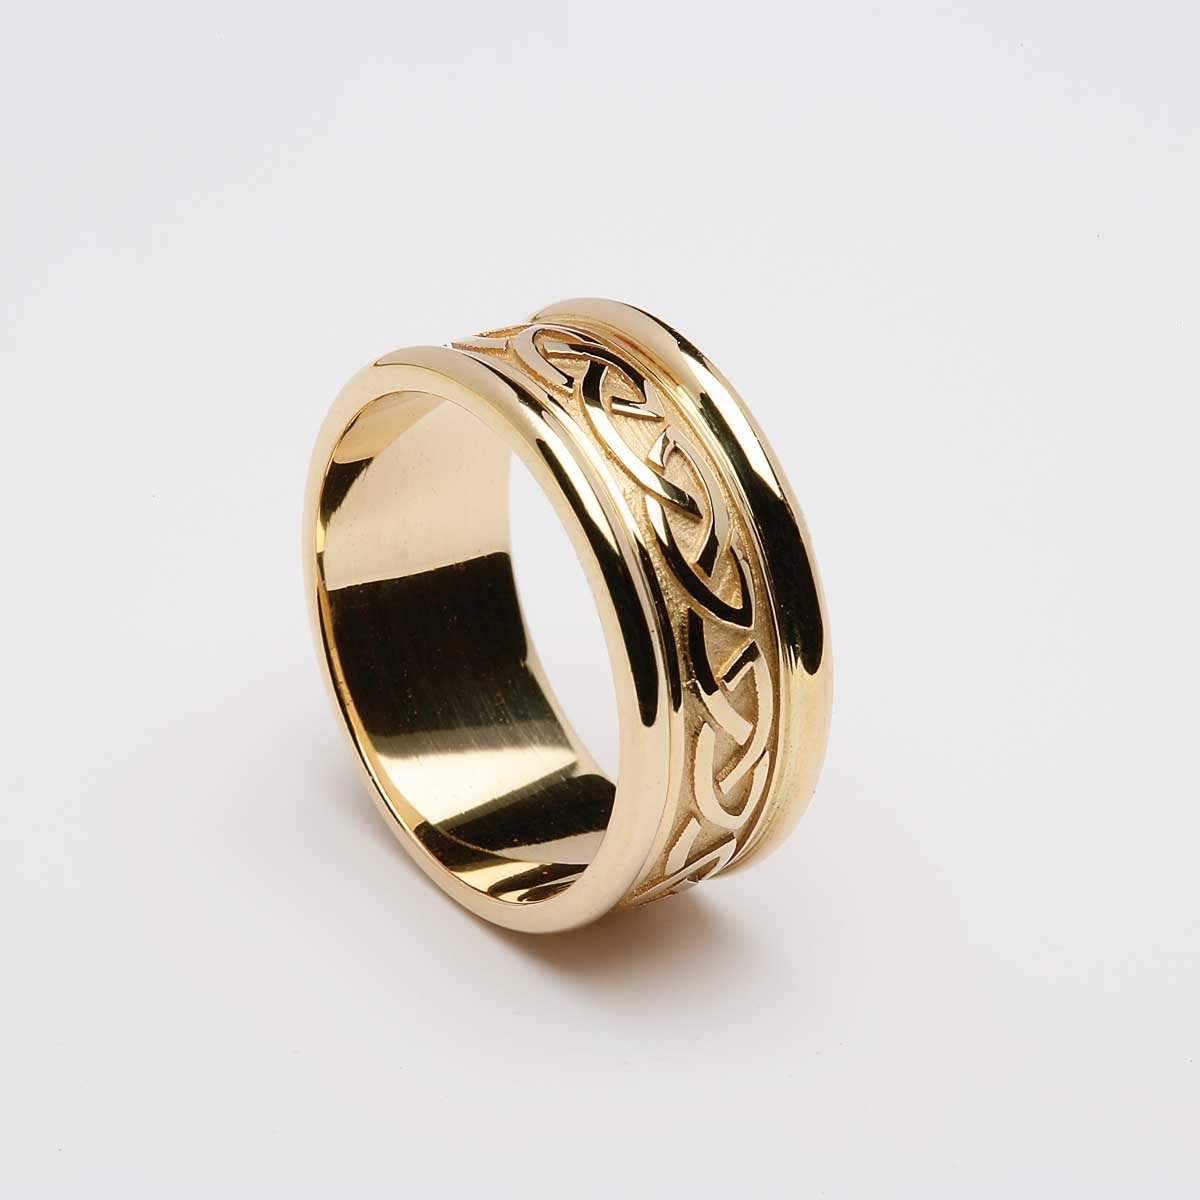 22K Gold Ring For Men - 235-GR6814 in 5.850 Grams